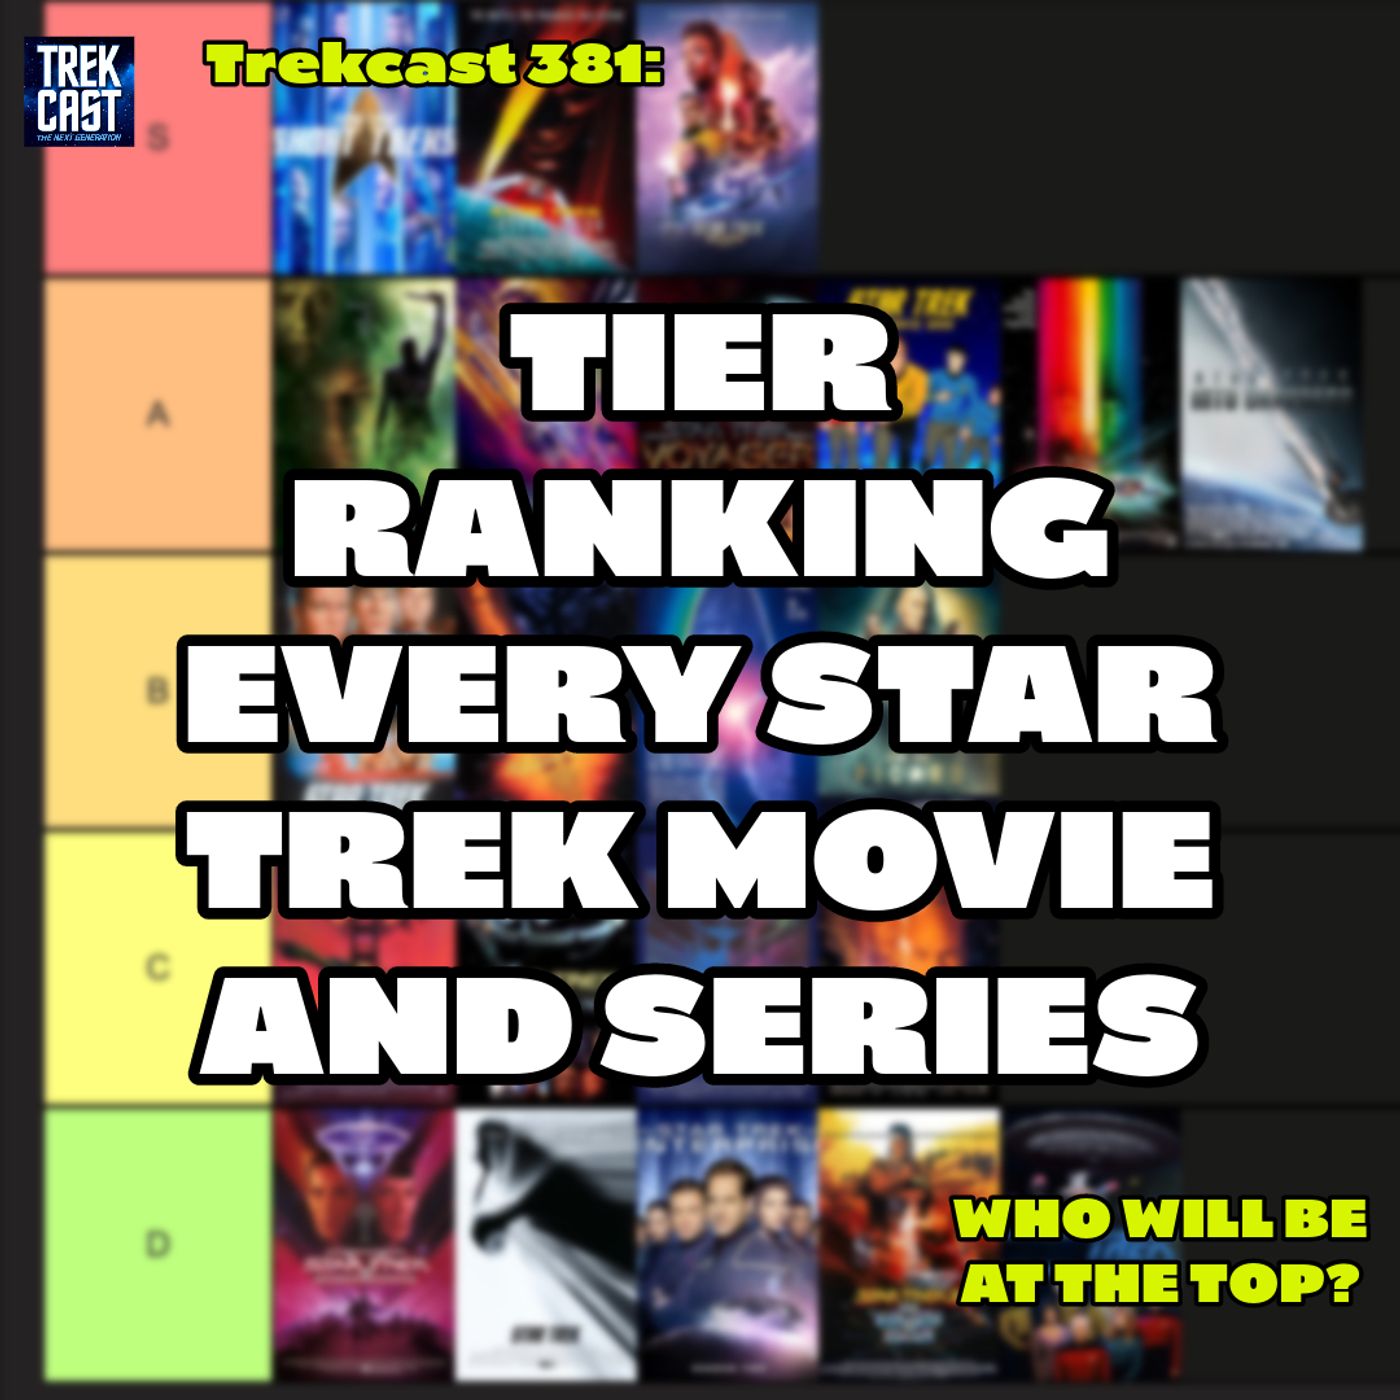 Trekcast 381: Tier Ranking Every Star Trek Movie and Series